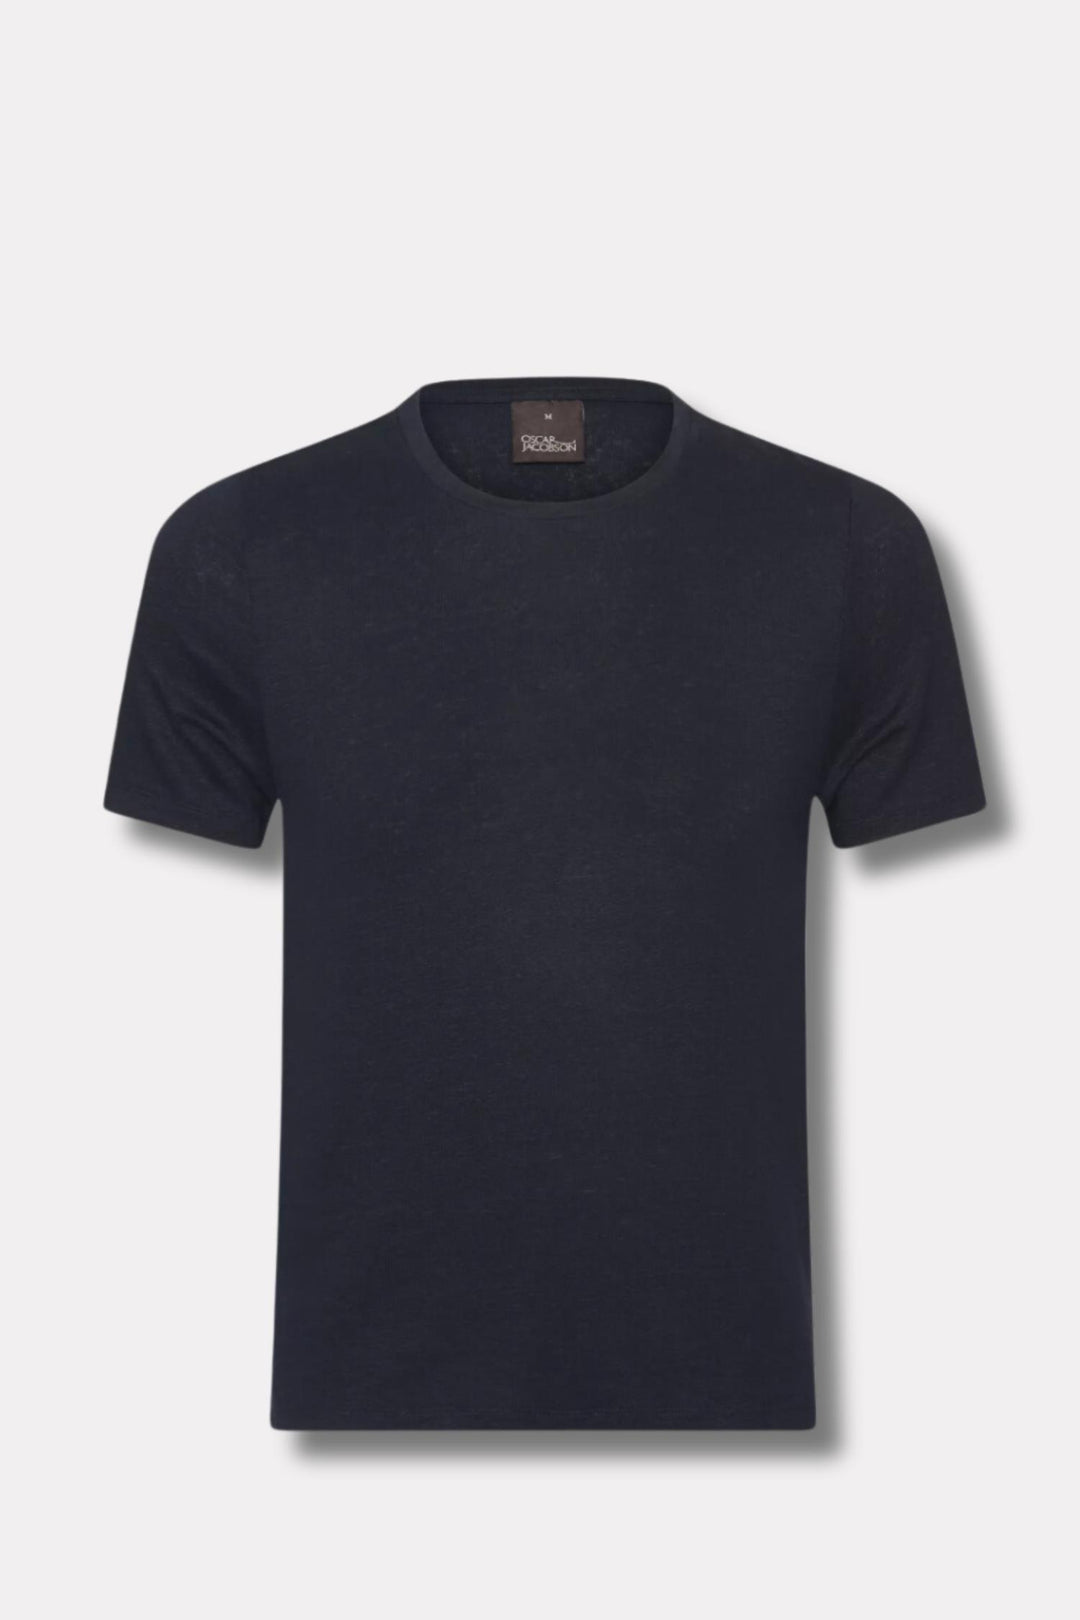 Kyran Linen T-Shirt Navy Dust